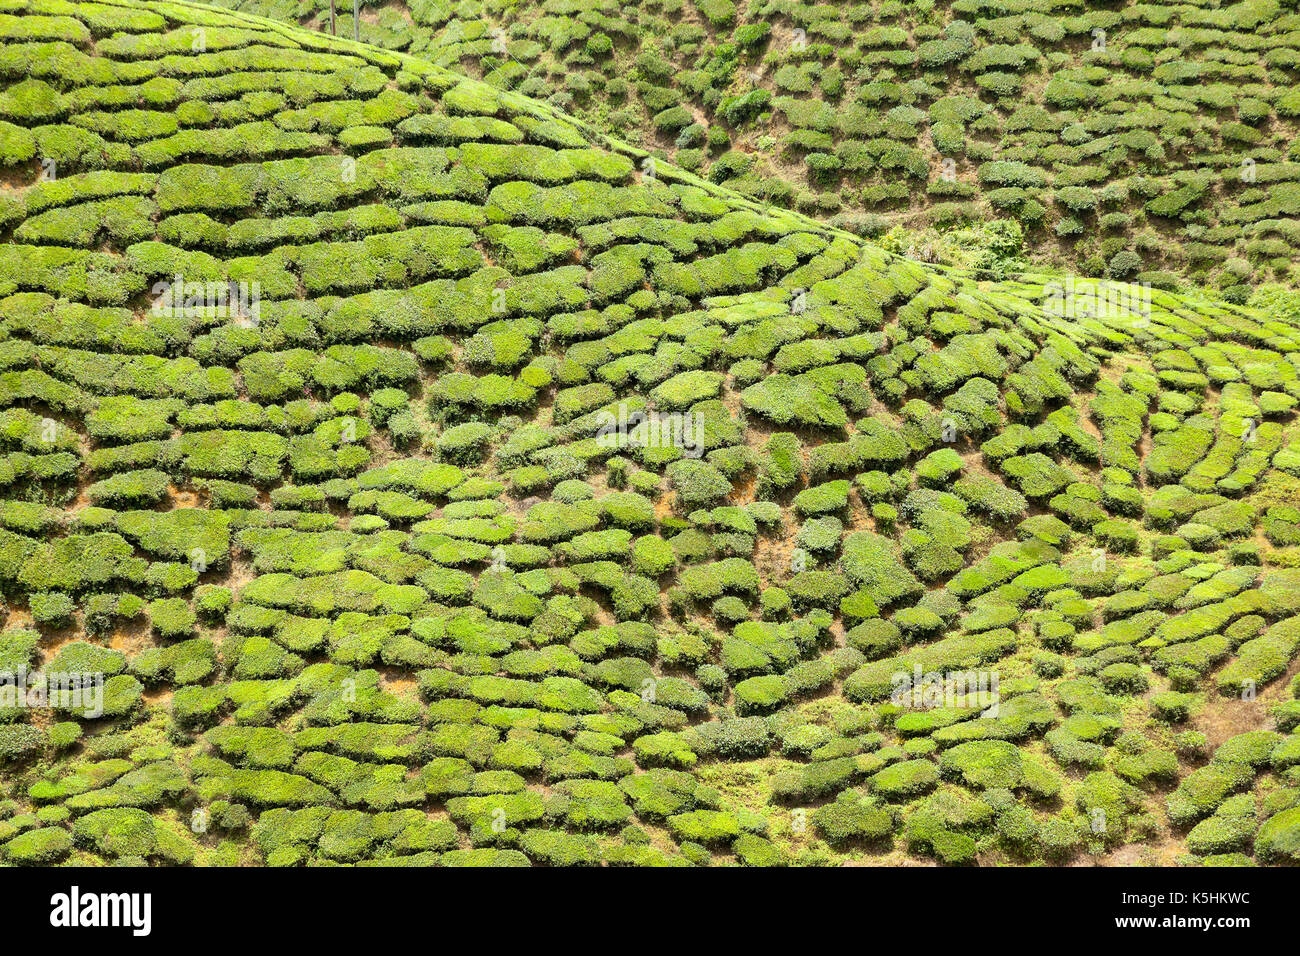 Los arbustos de té en la ladera de una colina, Camellia sinensis, Foto de stock